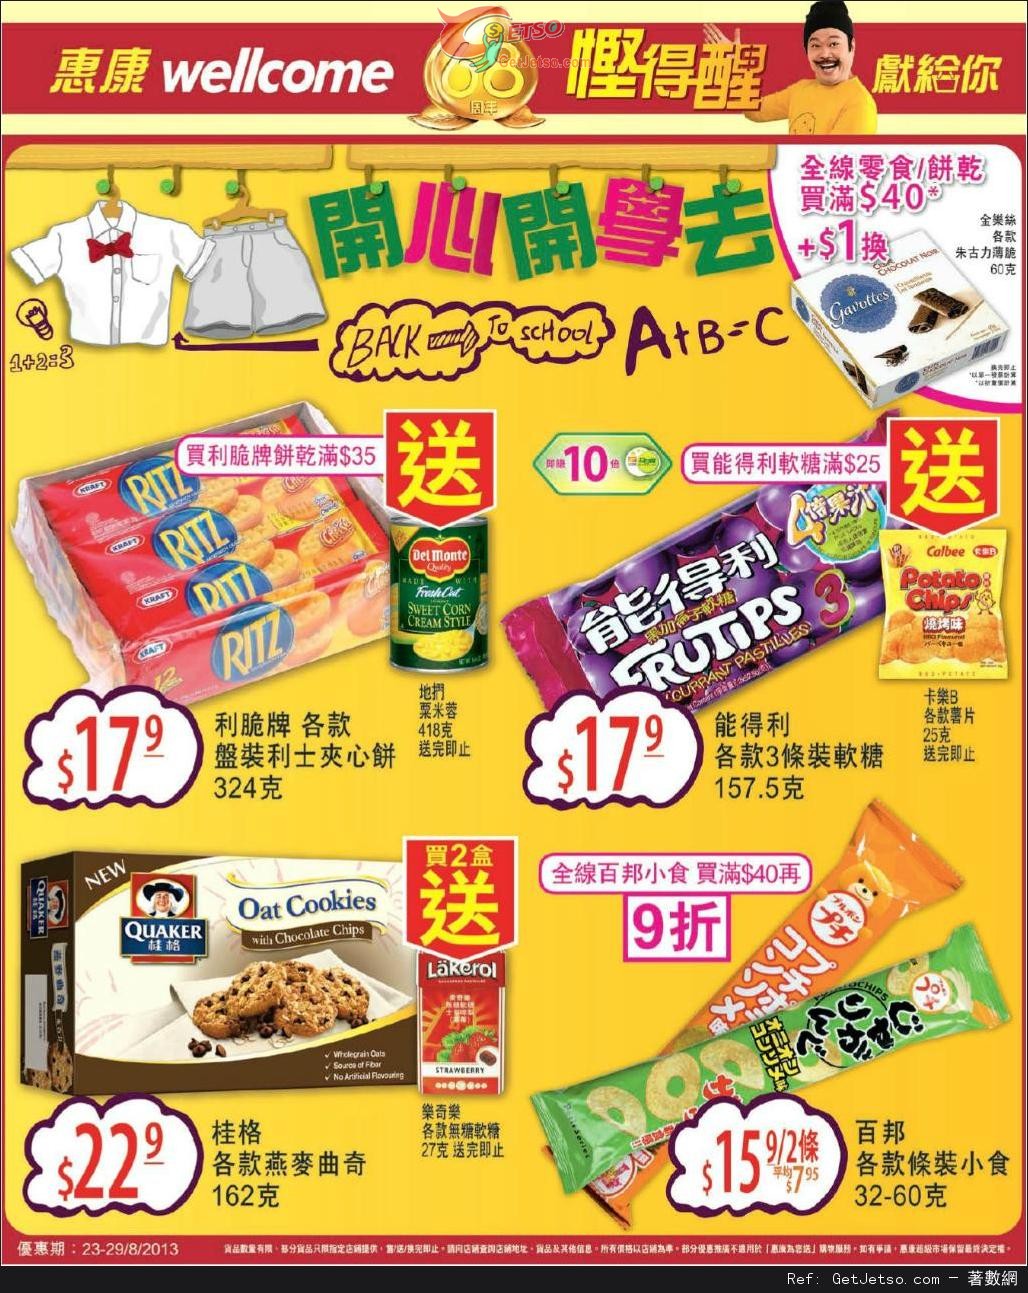 惠康超級市場全線零食餅乾及P&G產品購買優惠(至13年8月29日)圖片1